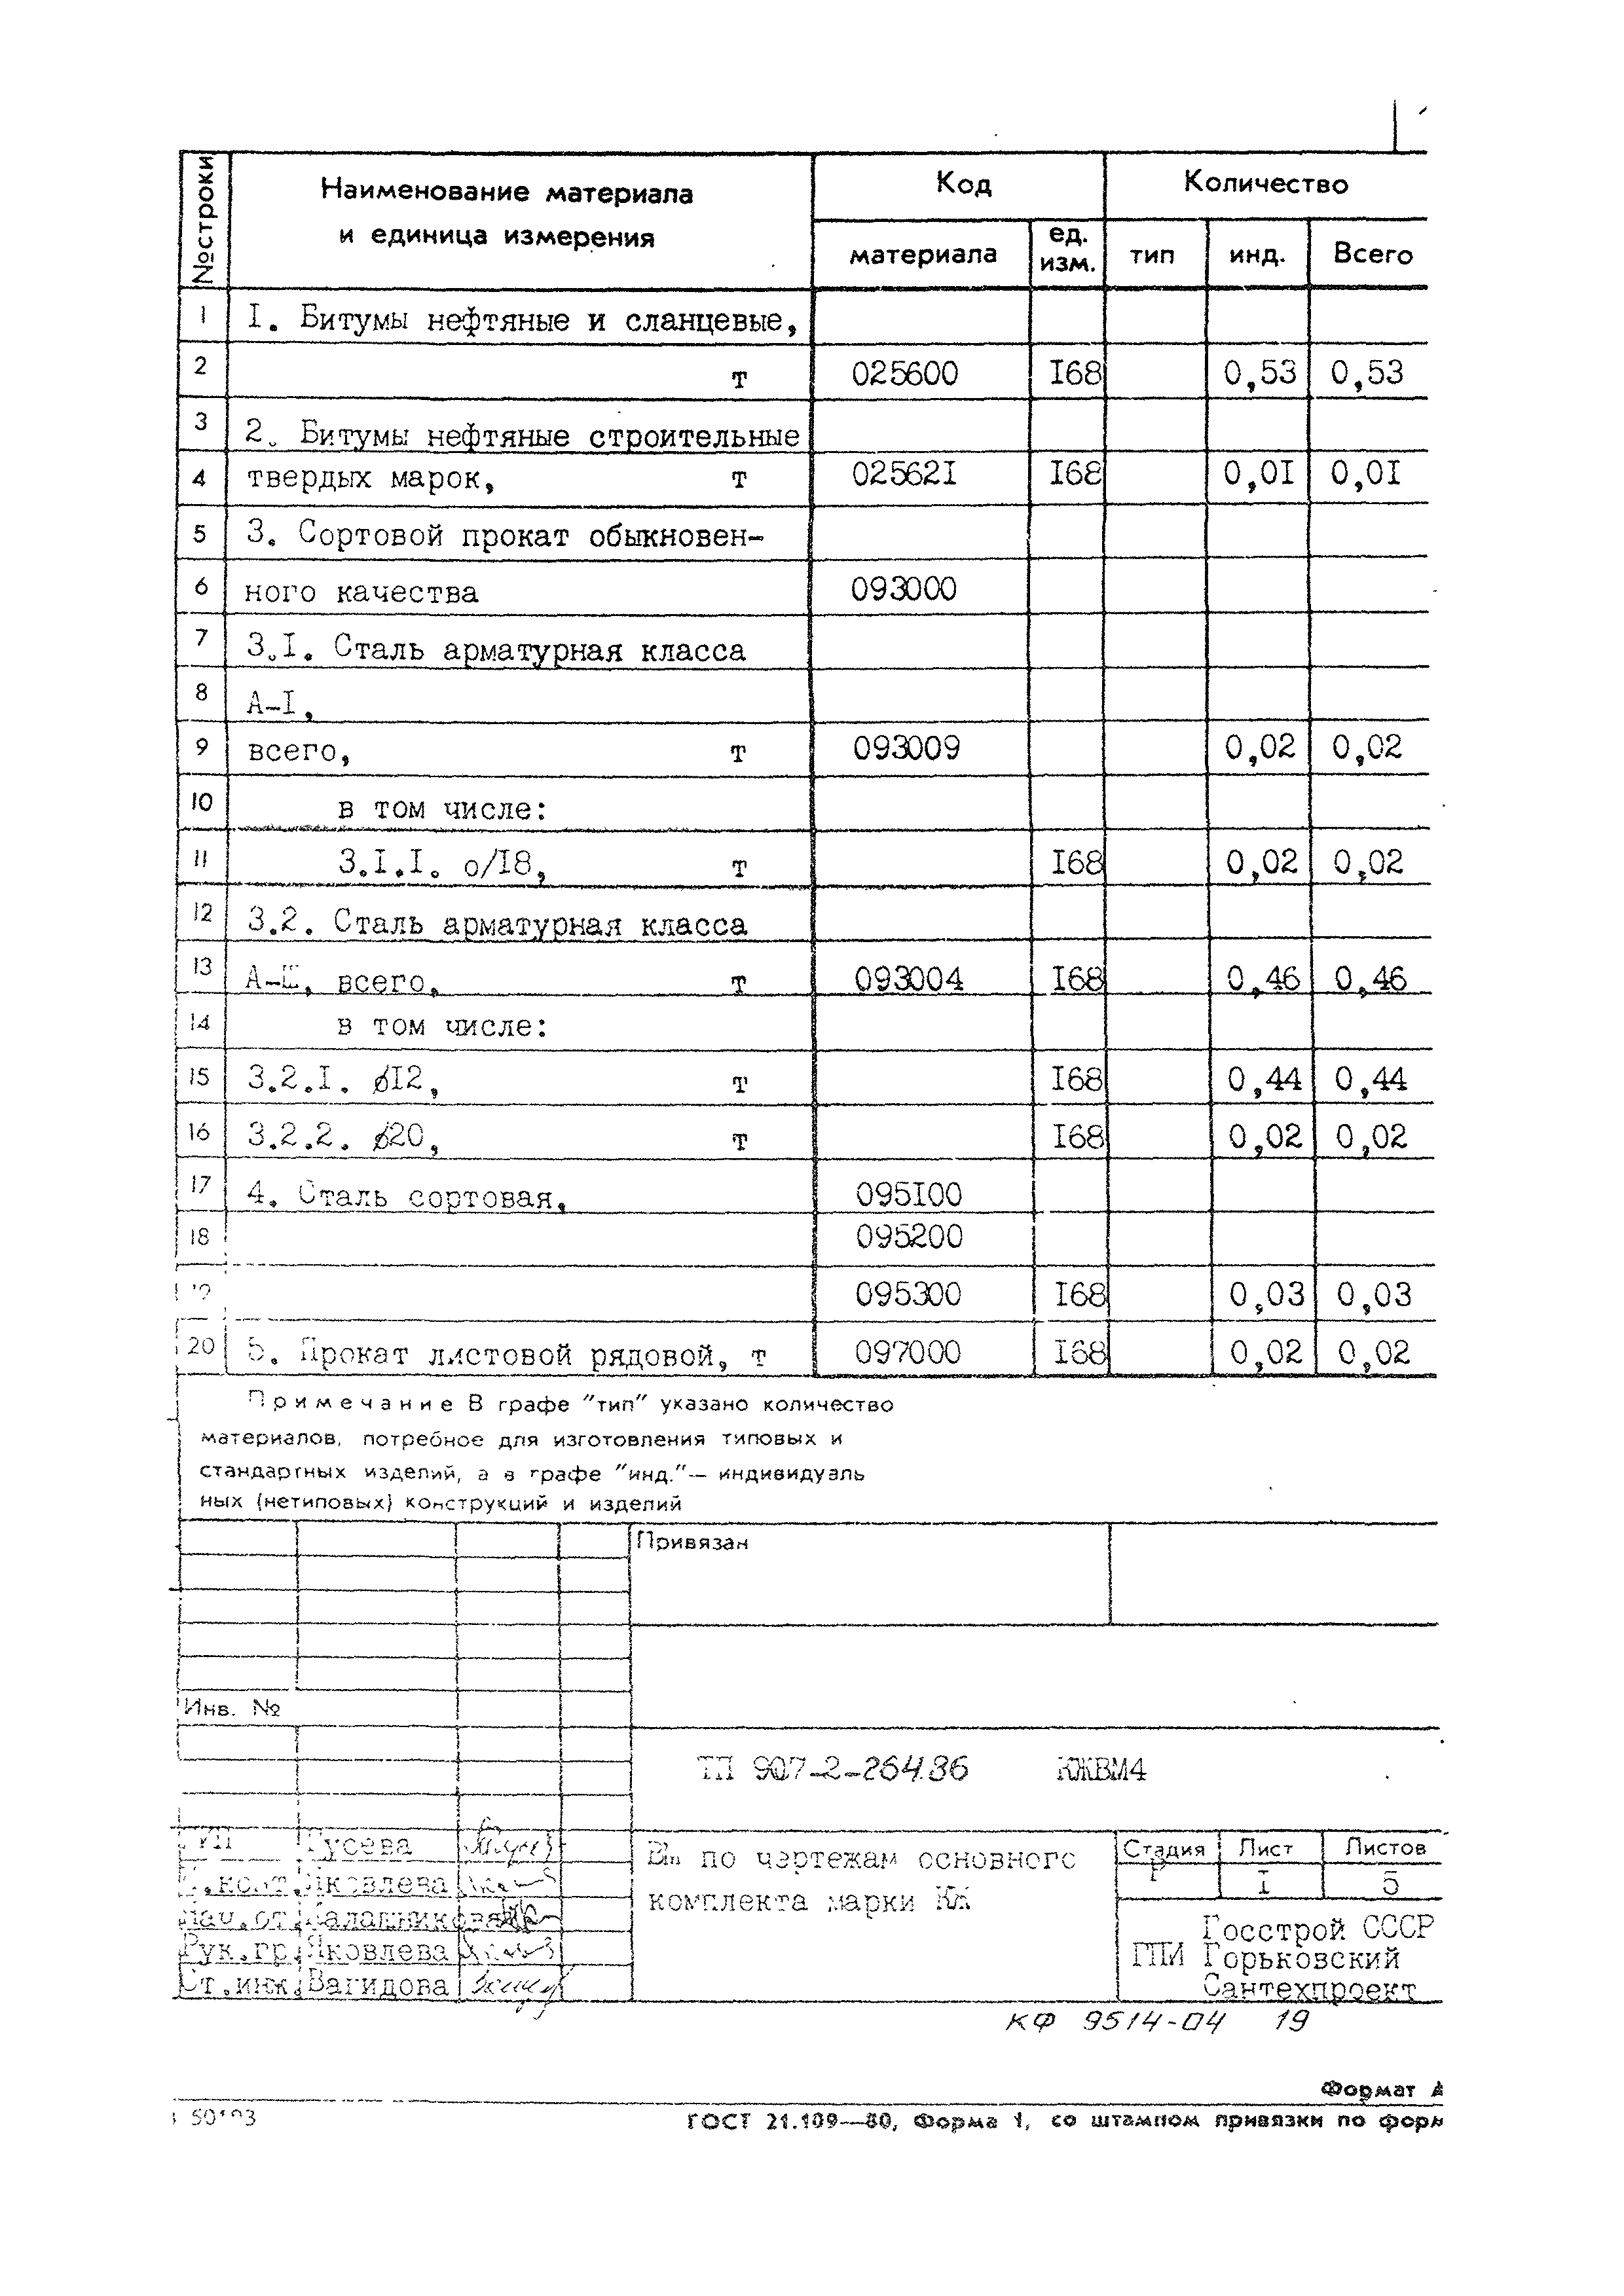 Типовой проект 907-2-264.86